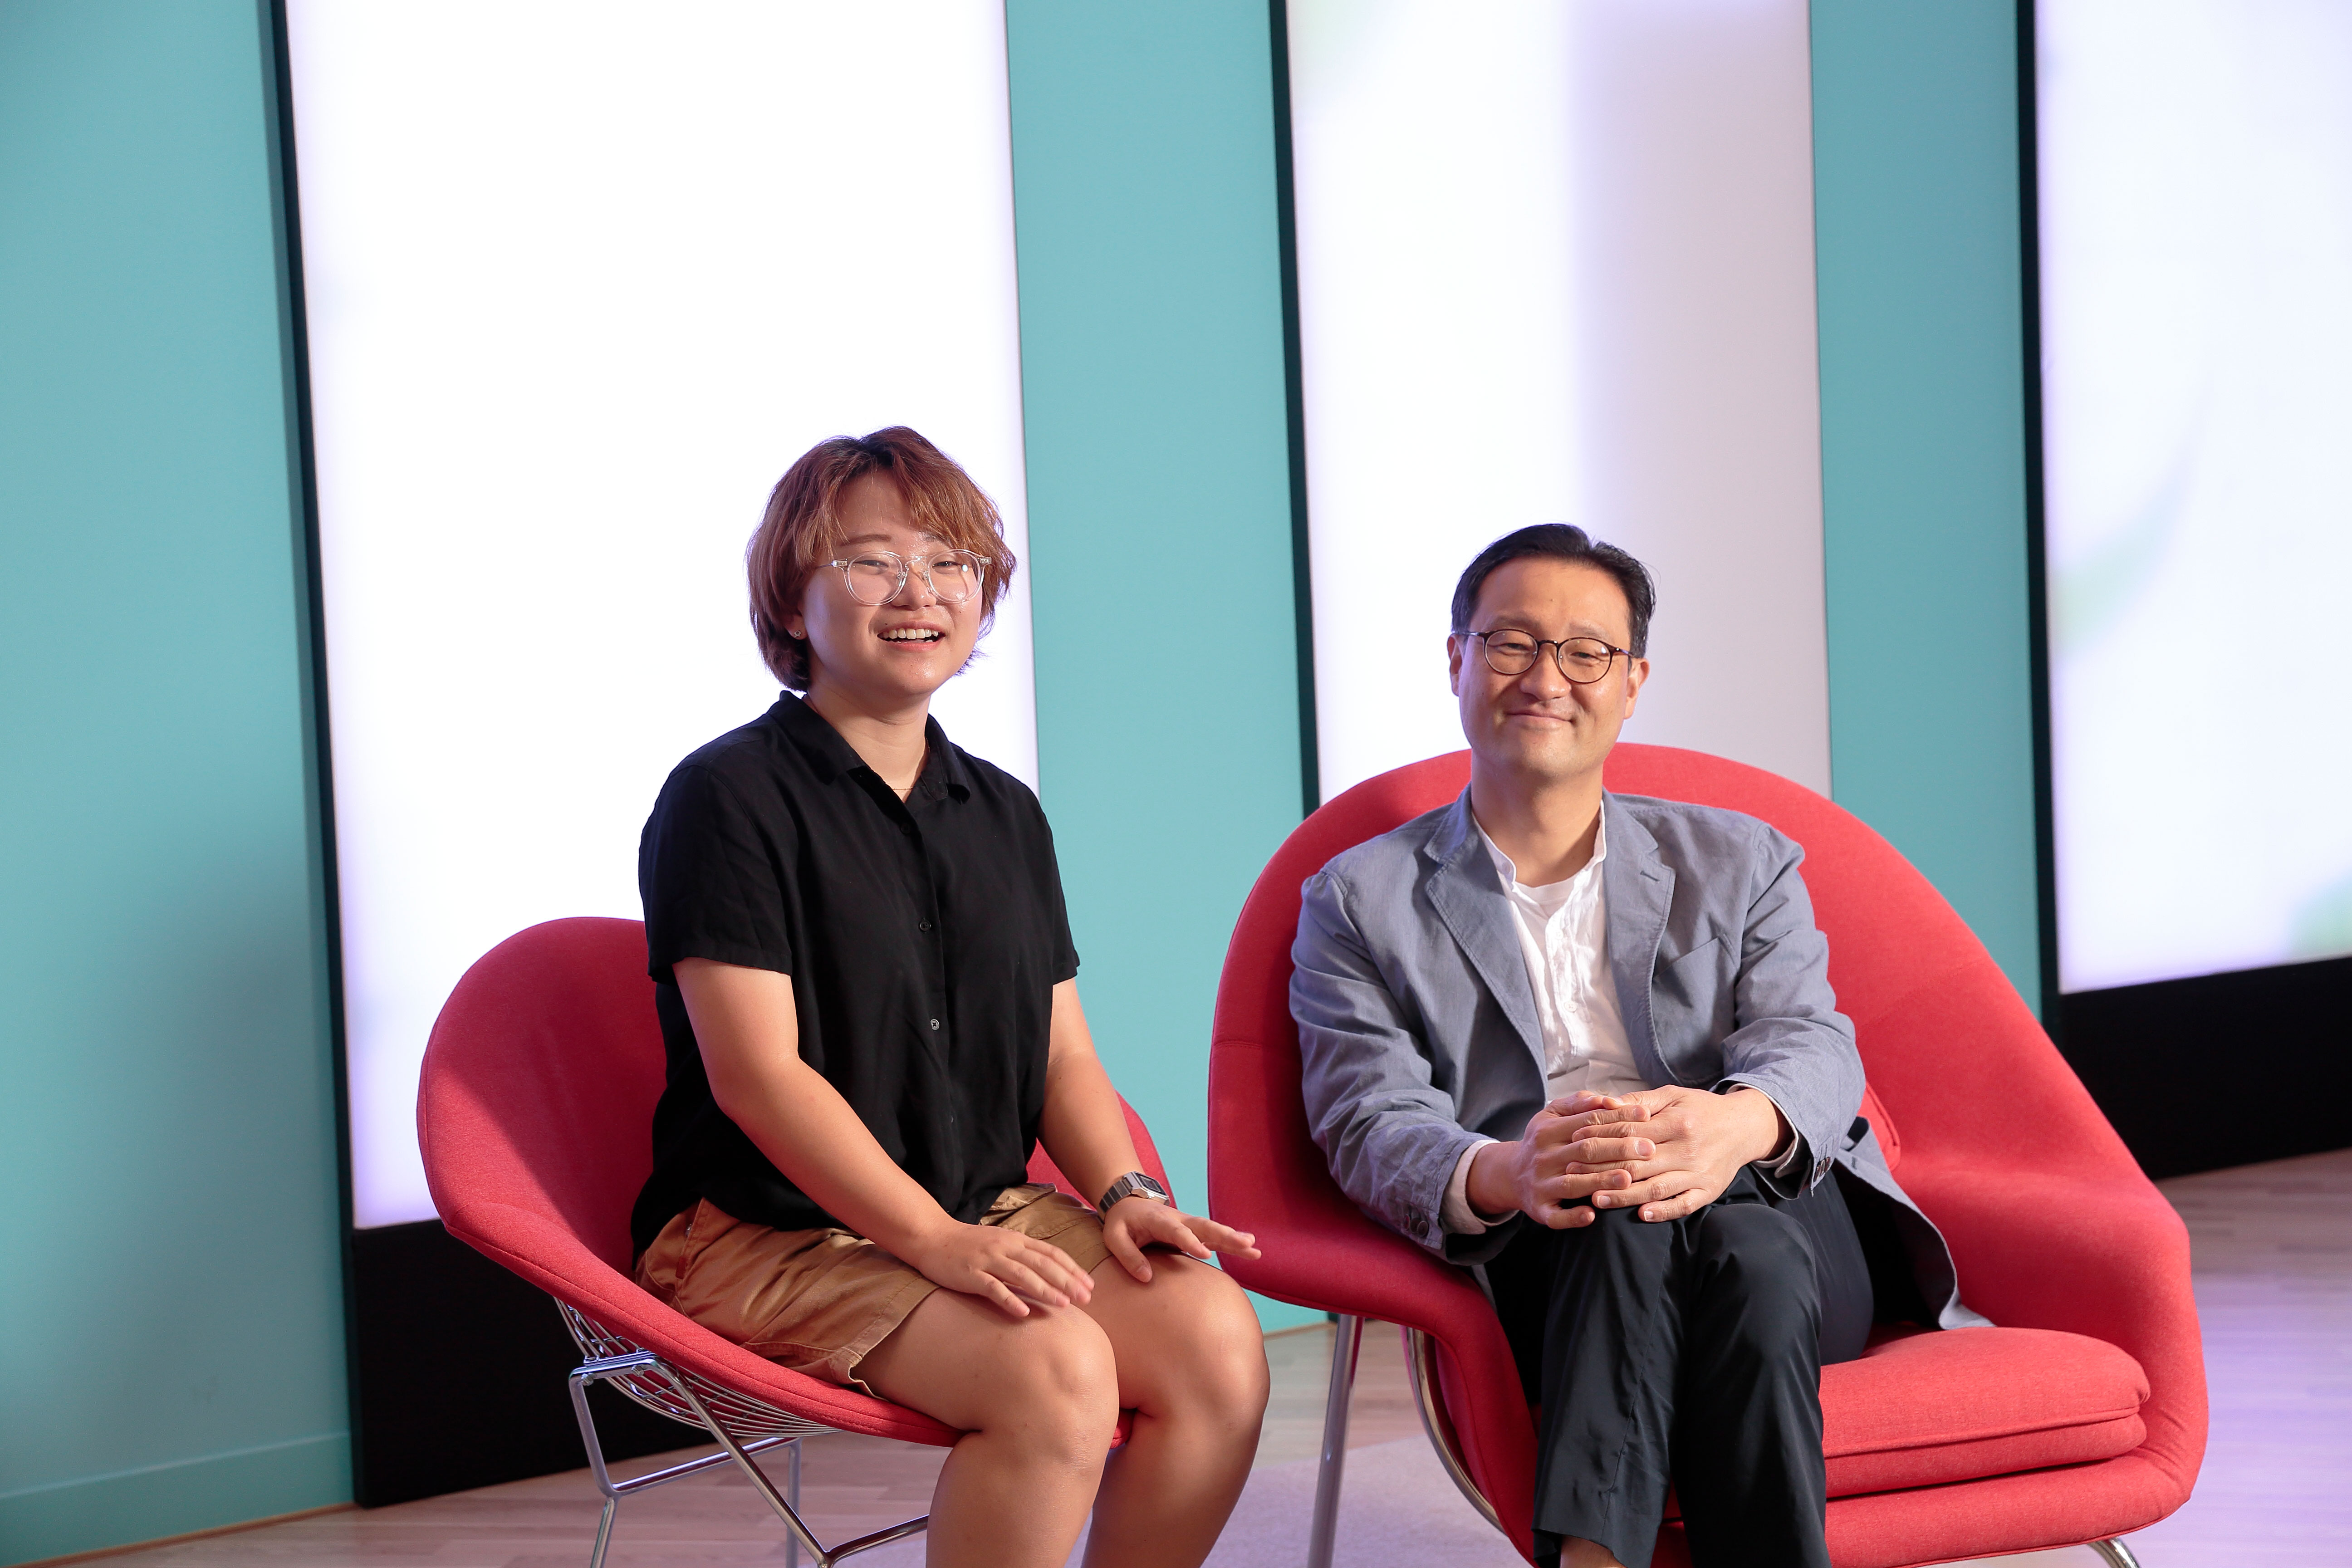 천나영 연구원(1저자, 왼쪽)과 이자일 생명과학부 교수(오른쪽) | 사진: 김경채